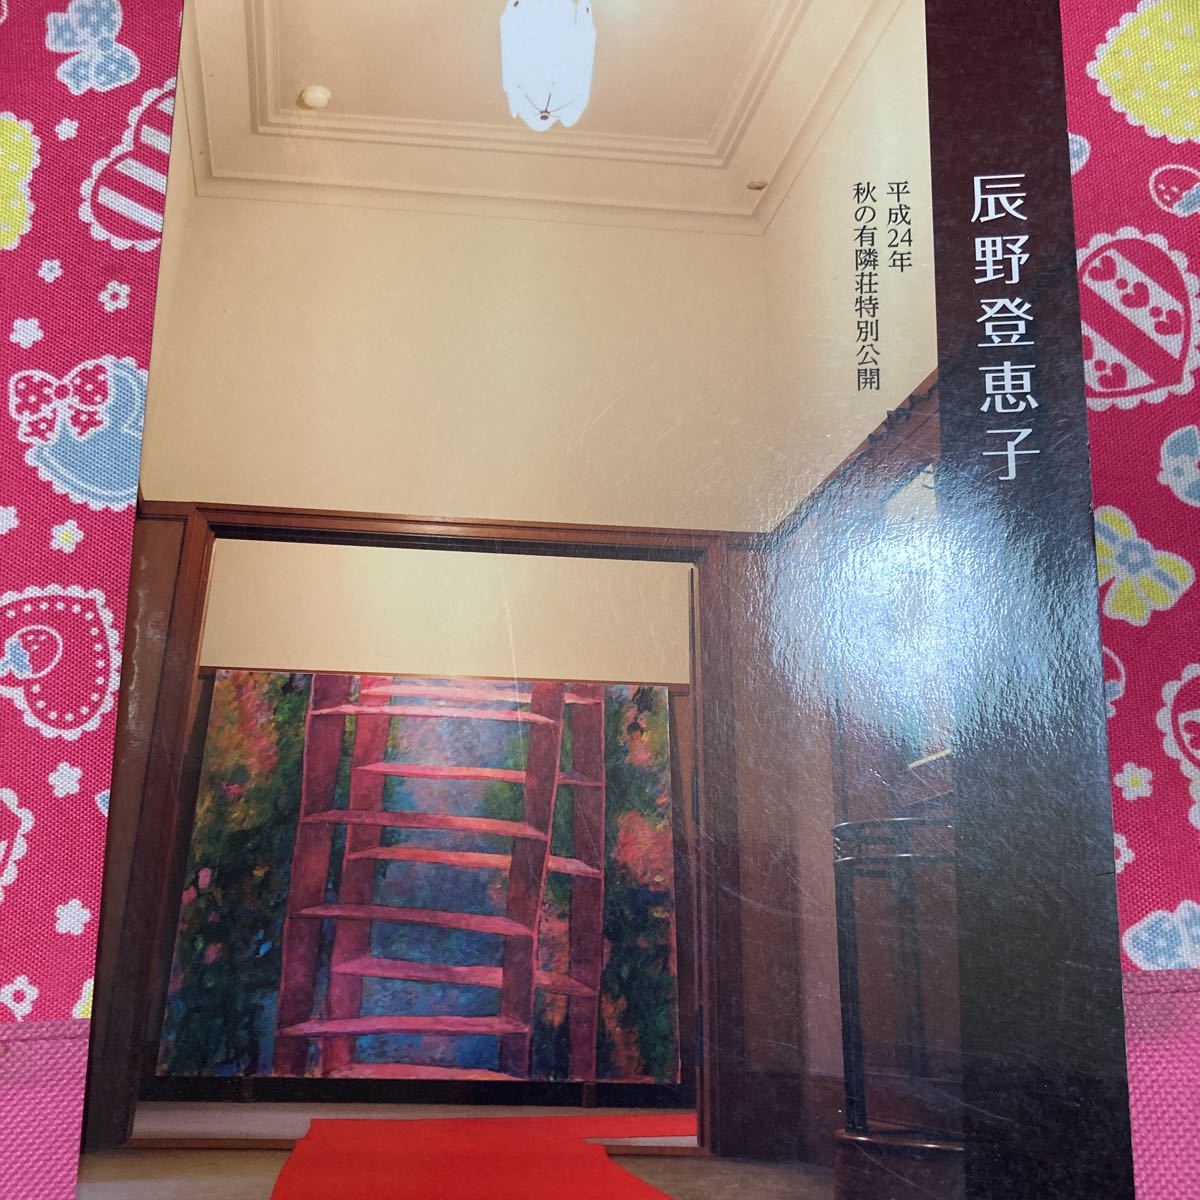 2012 की शरद ऋतु में खुलने वाले युरिनसो स्पेशल की सूची, टोको तात्सुनो प्रदर्शनी, पेज 64, चित्रकारी, कला पुस्तक, संग्रह, सूची